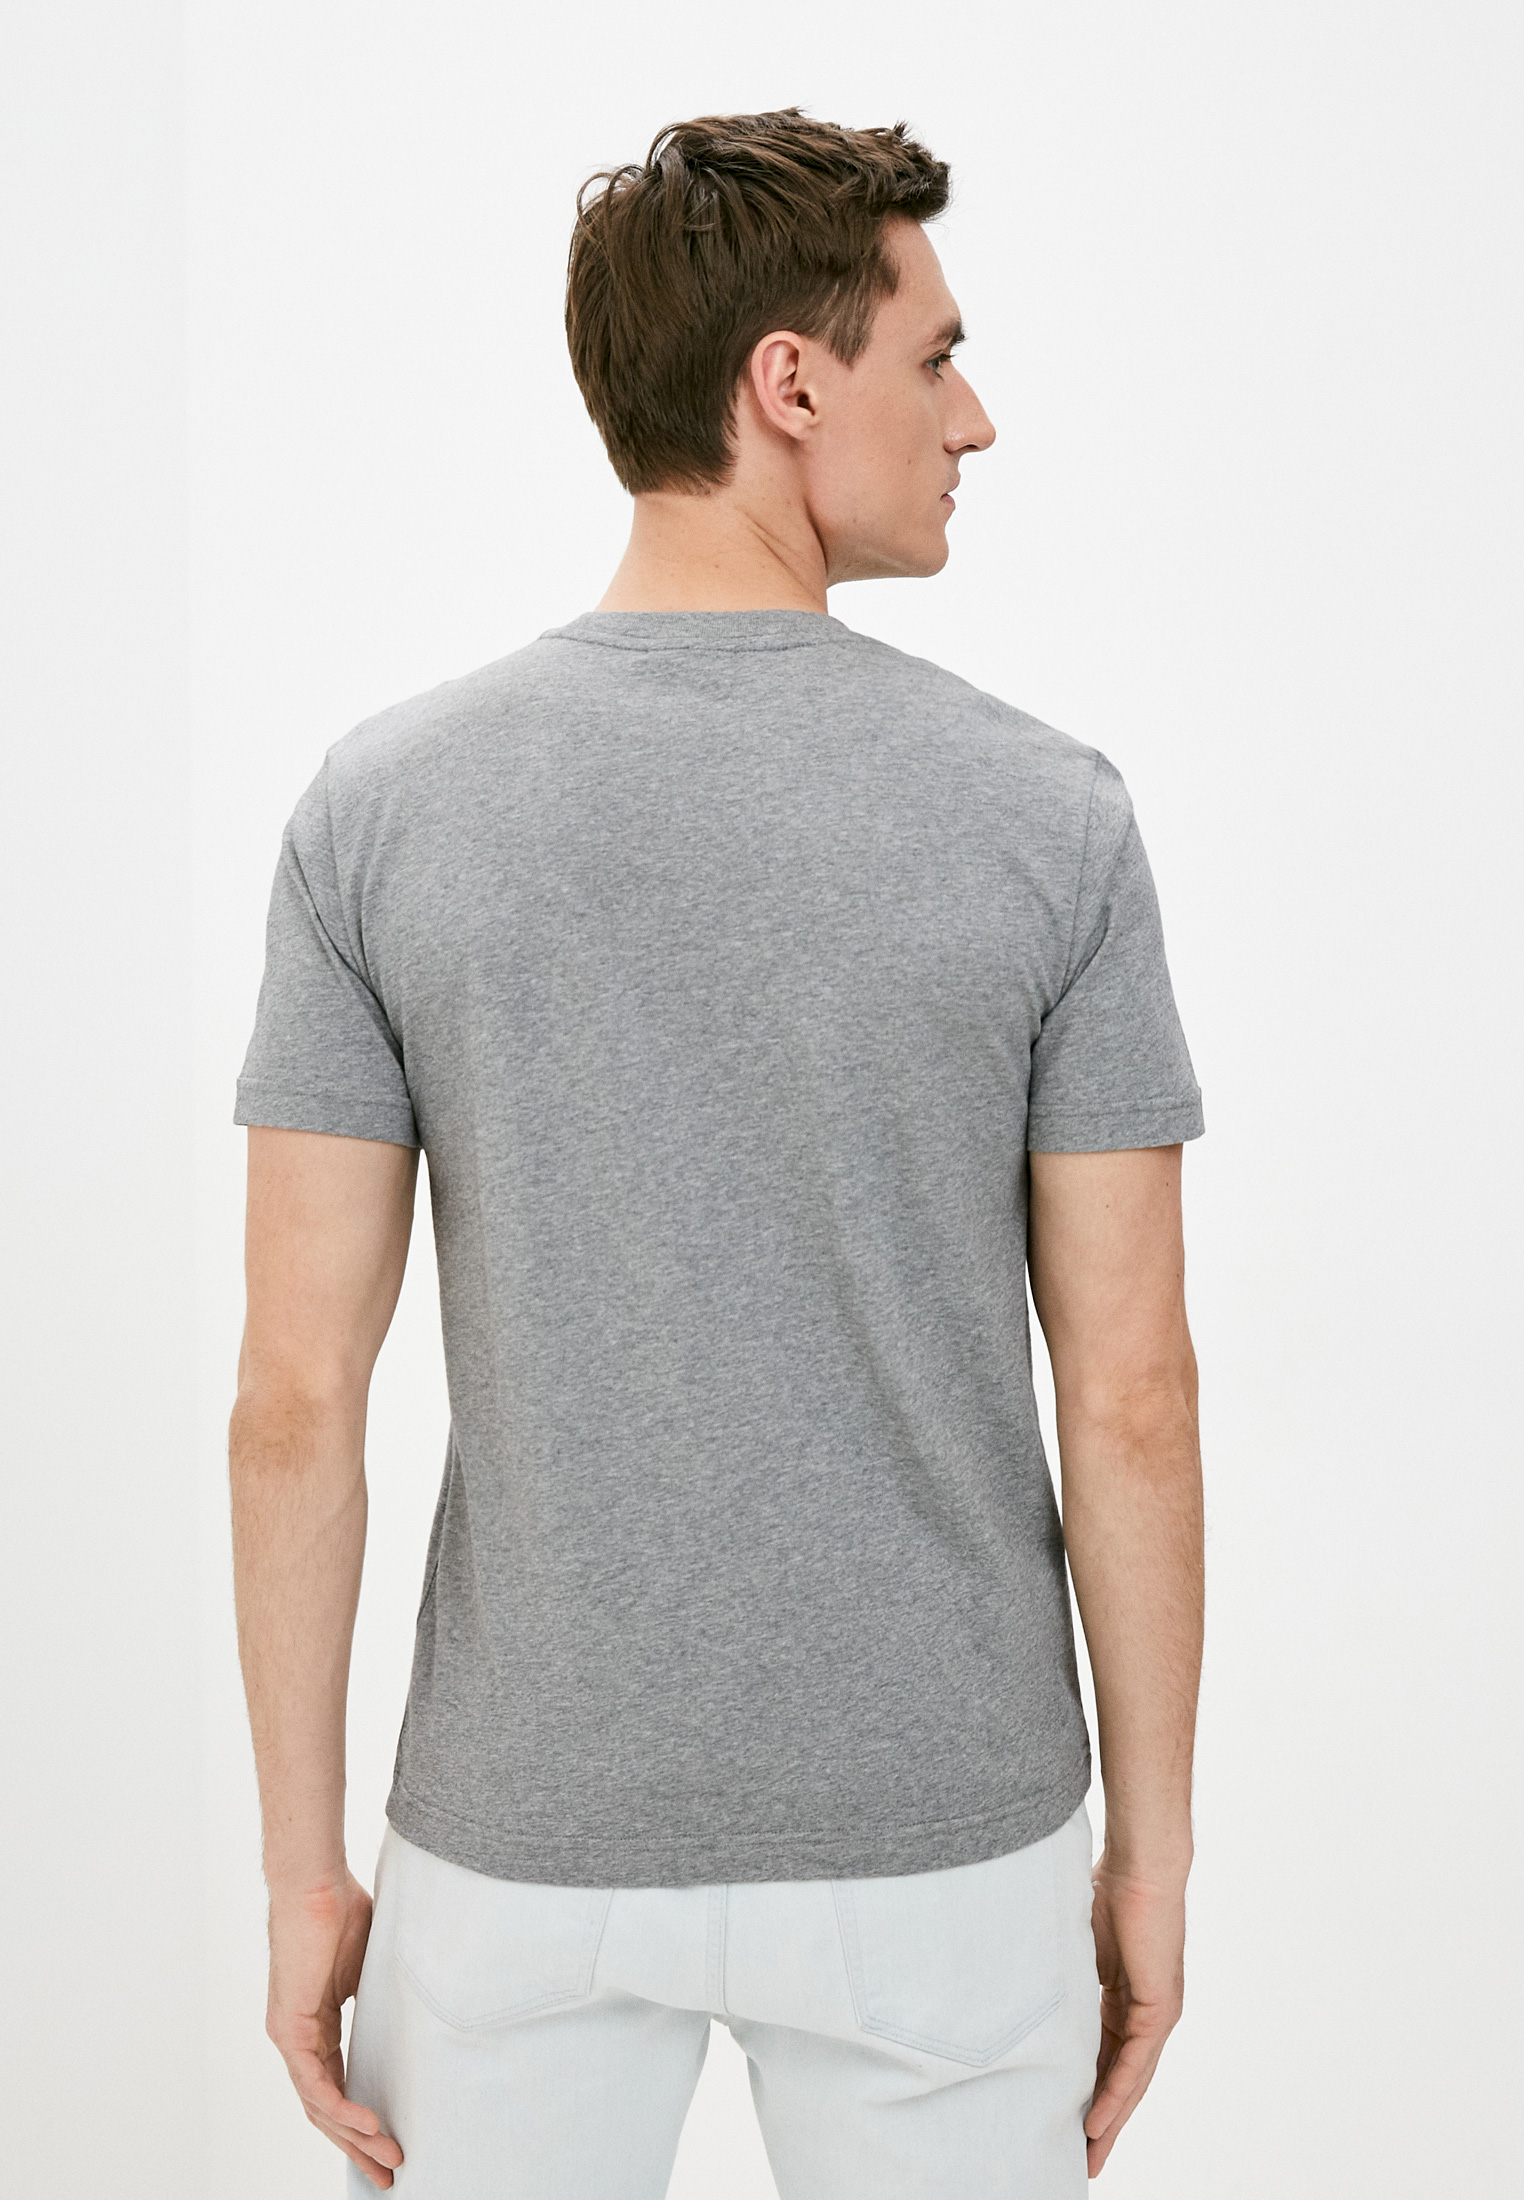 Мужская футболка Calvin Klein (Кельвин Кляйн) K10K104062: изображение 4